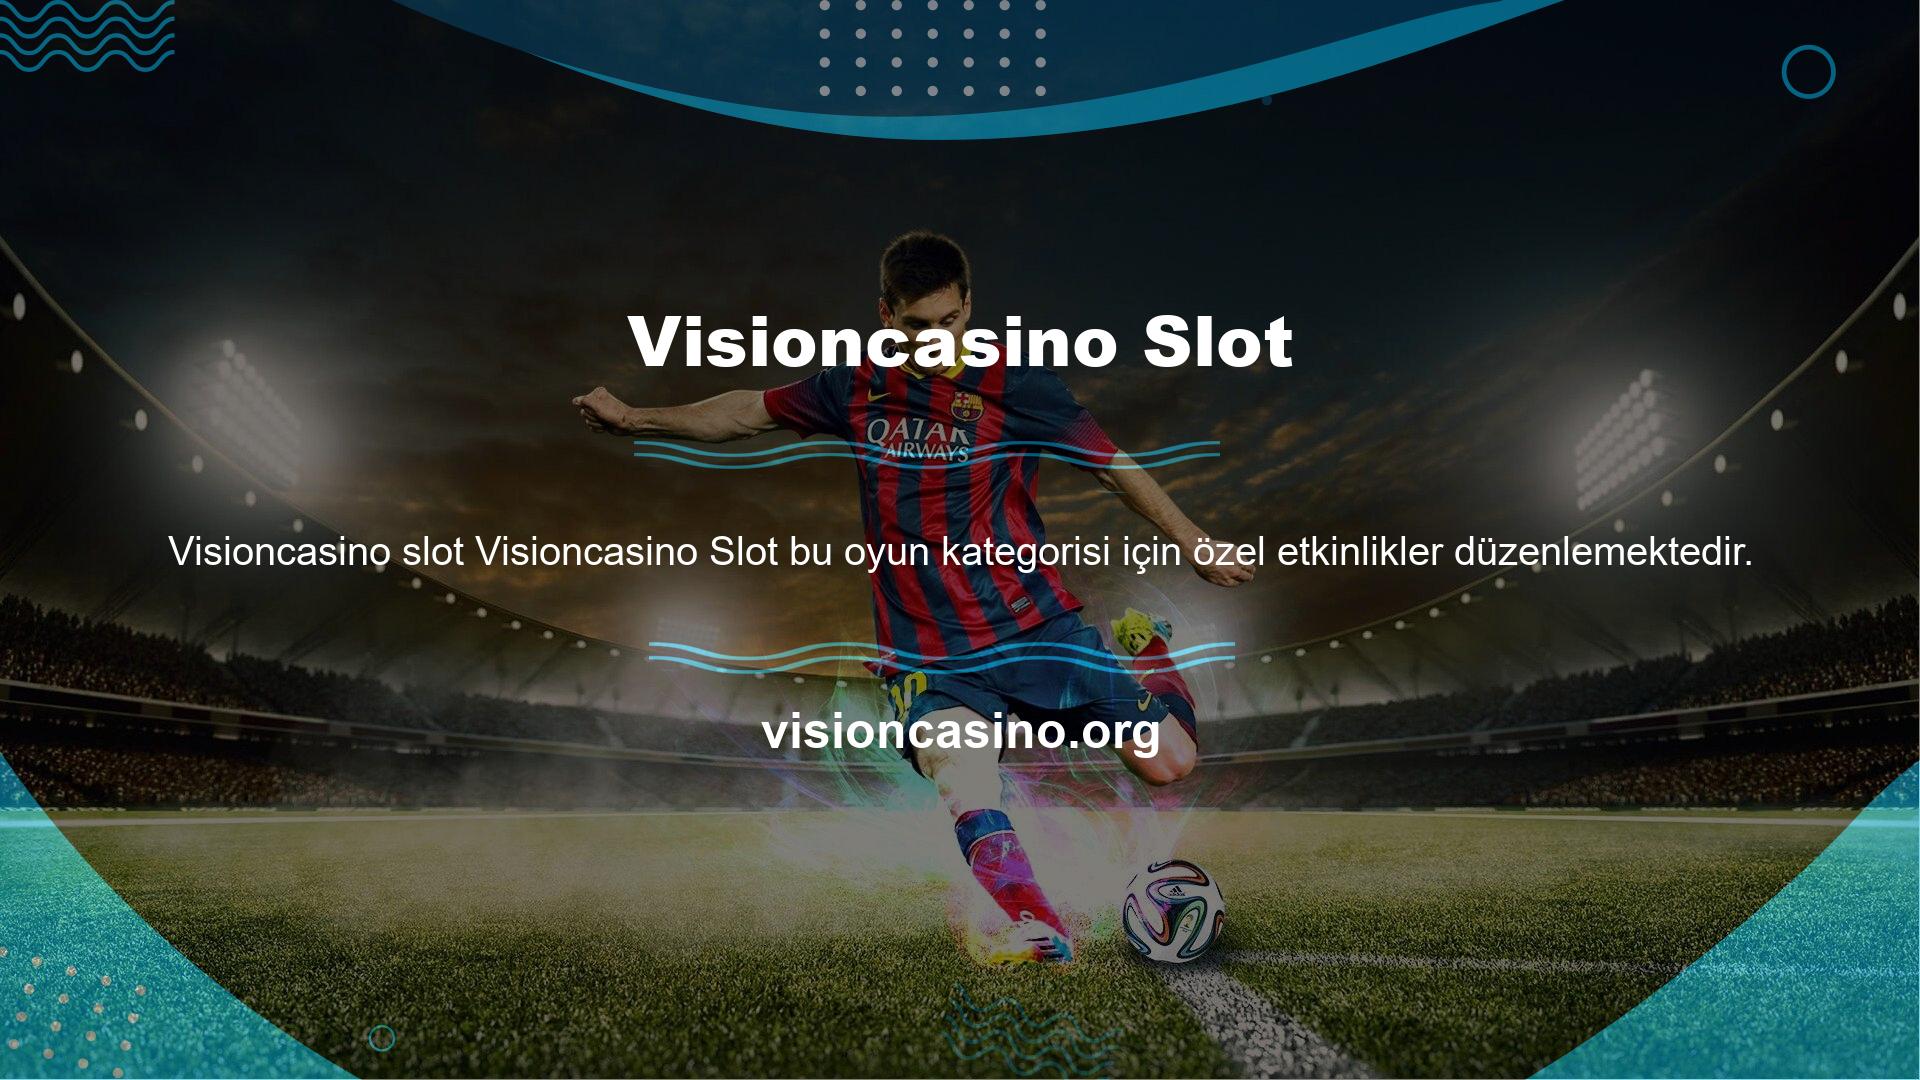 Visioncasino ödül kazanma konusunda oldukça cömert davranmakta ve slot oyunlarına özel etkinlikler düzenlemektedir